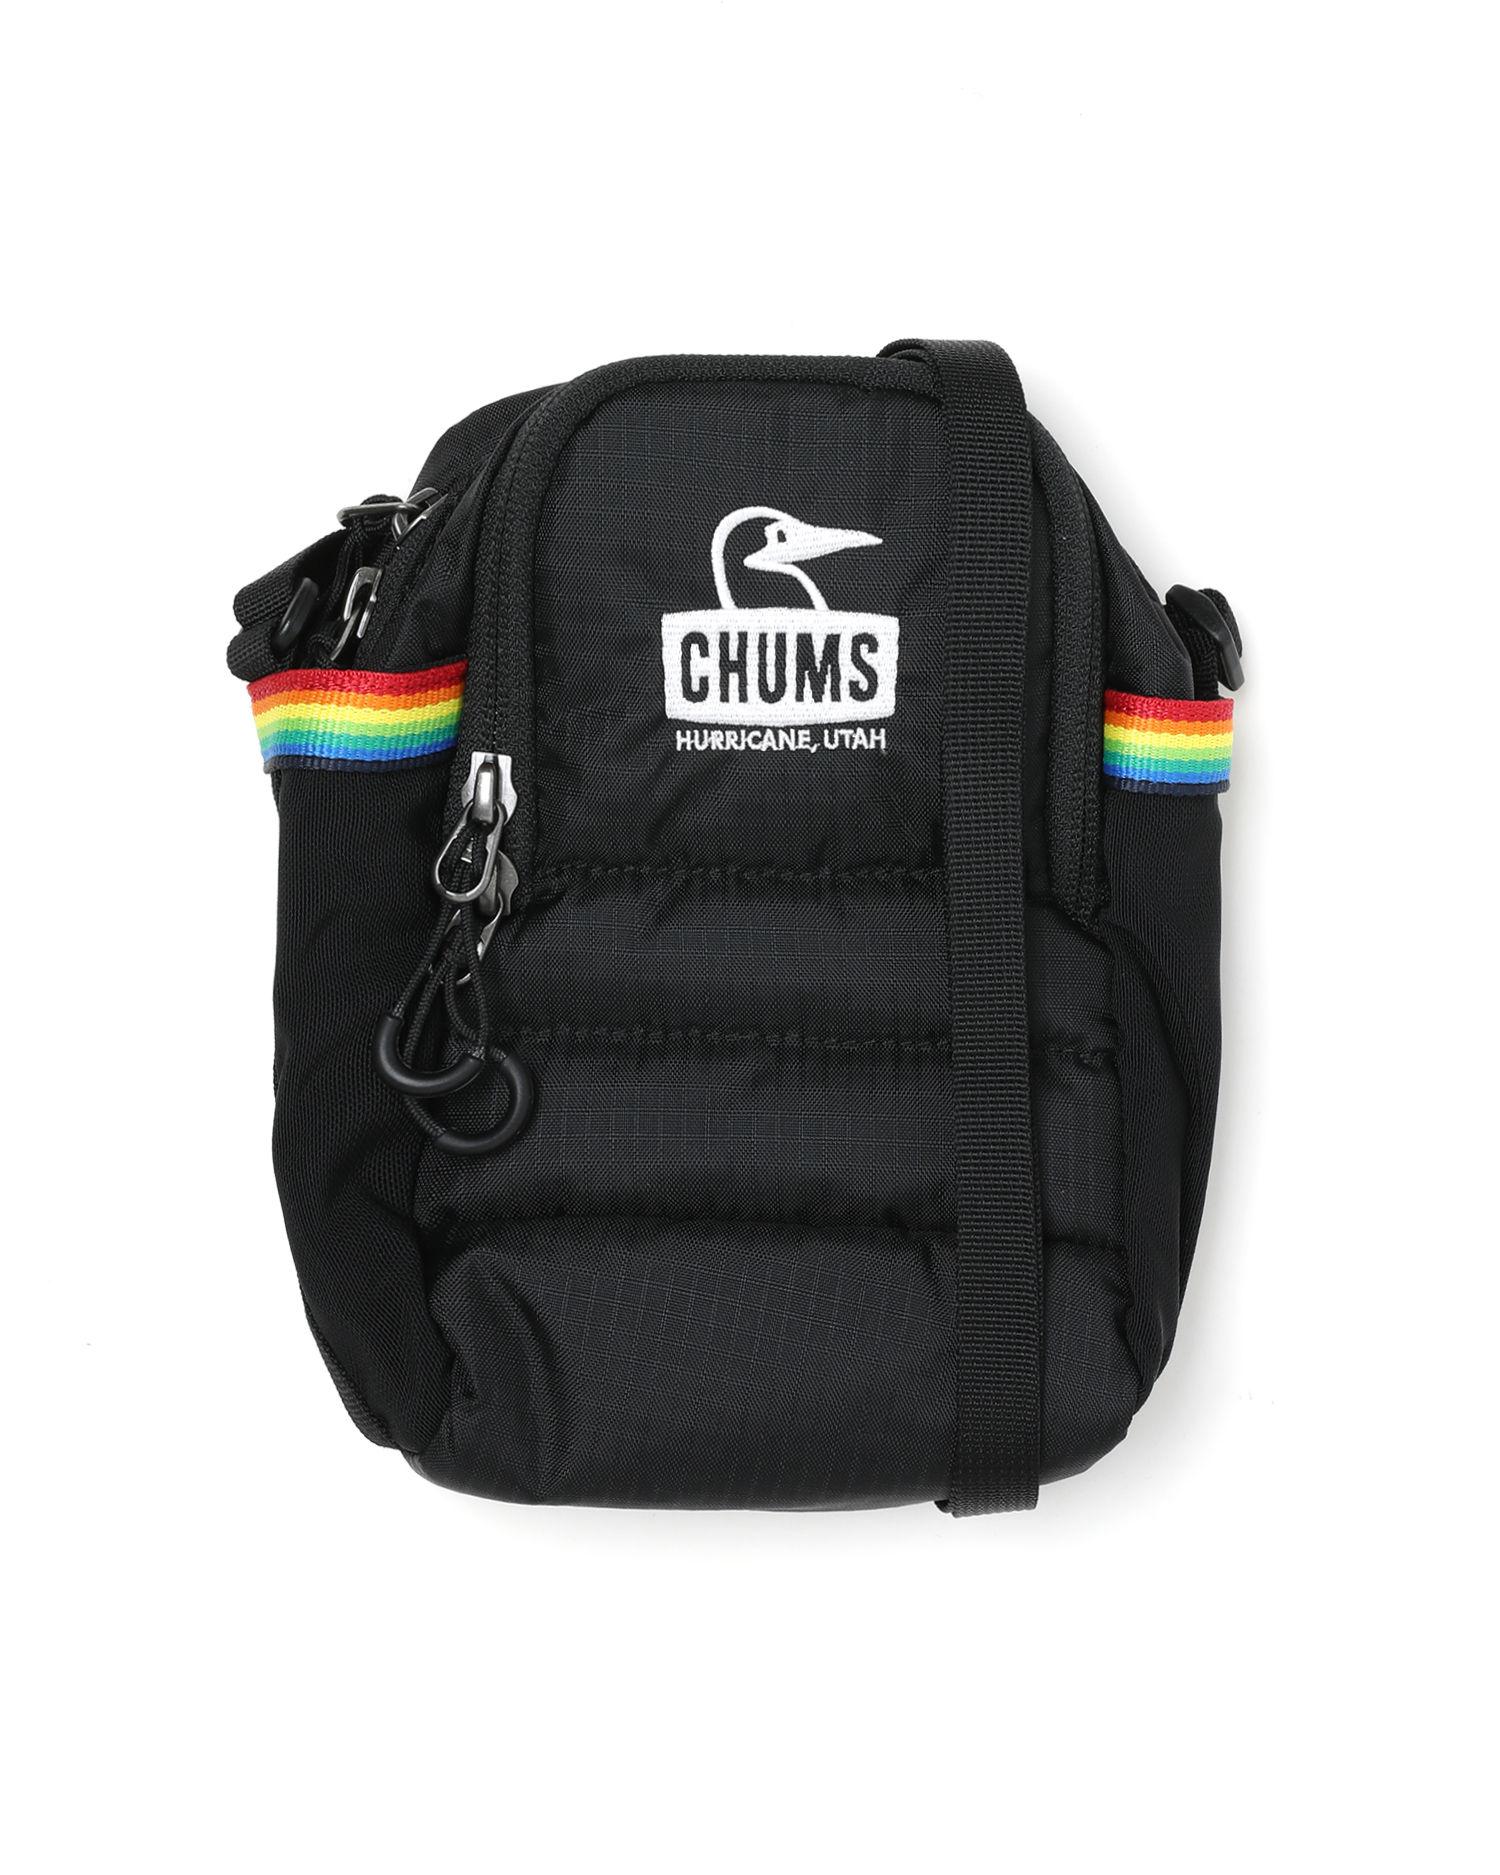 Rainbow stripe shoulder bag by CHUMS